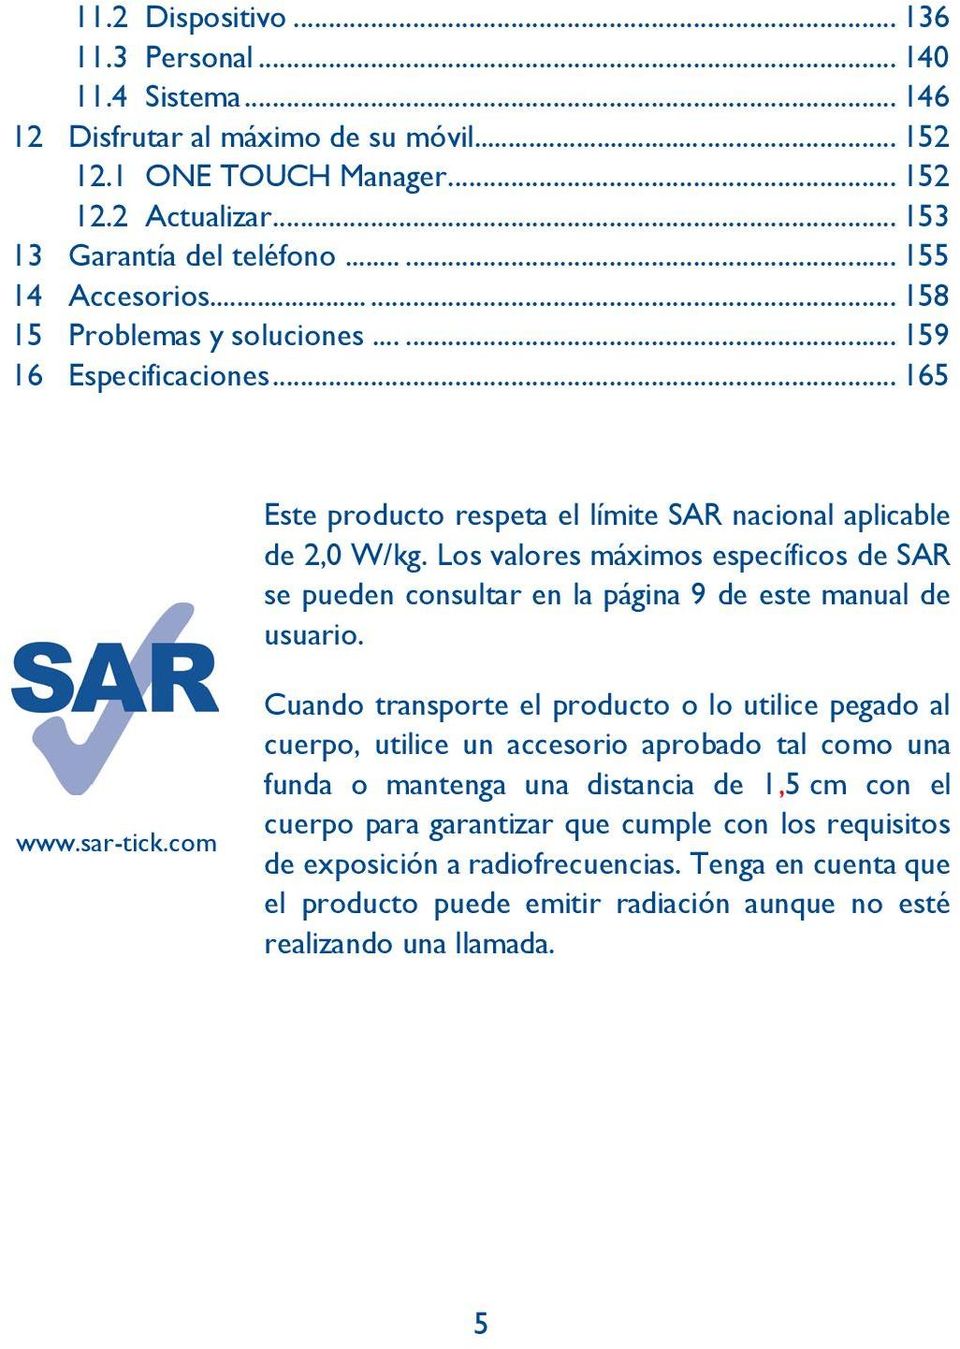 Los valores máximos específicos de SAR se pueden consultar en la página 9 de este manual de usuario. www.sar-tick.